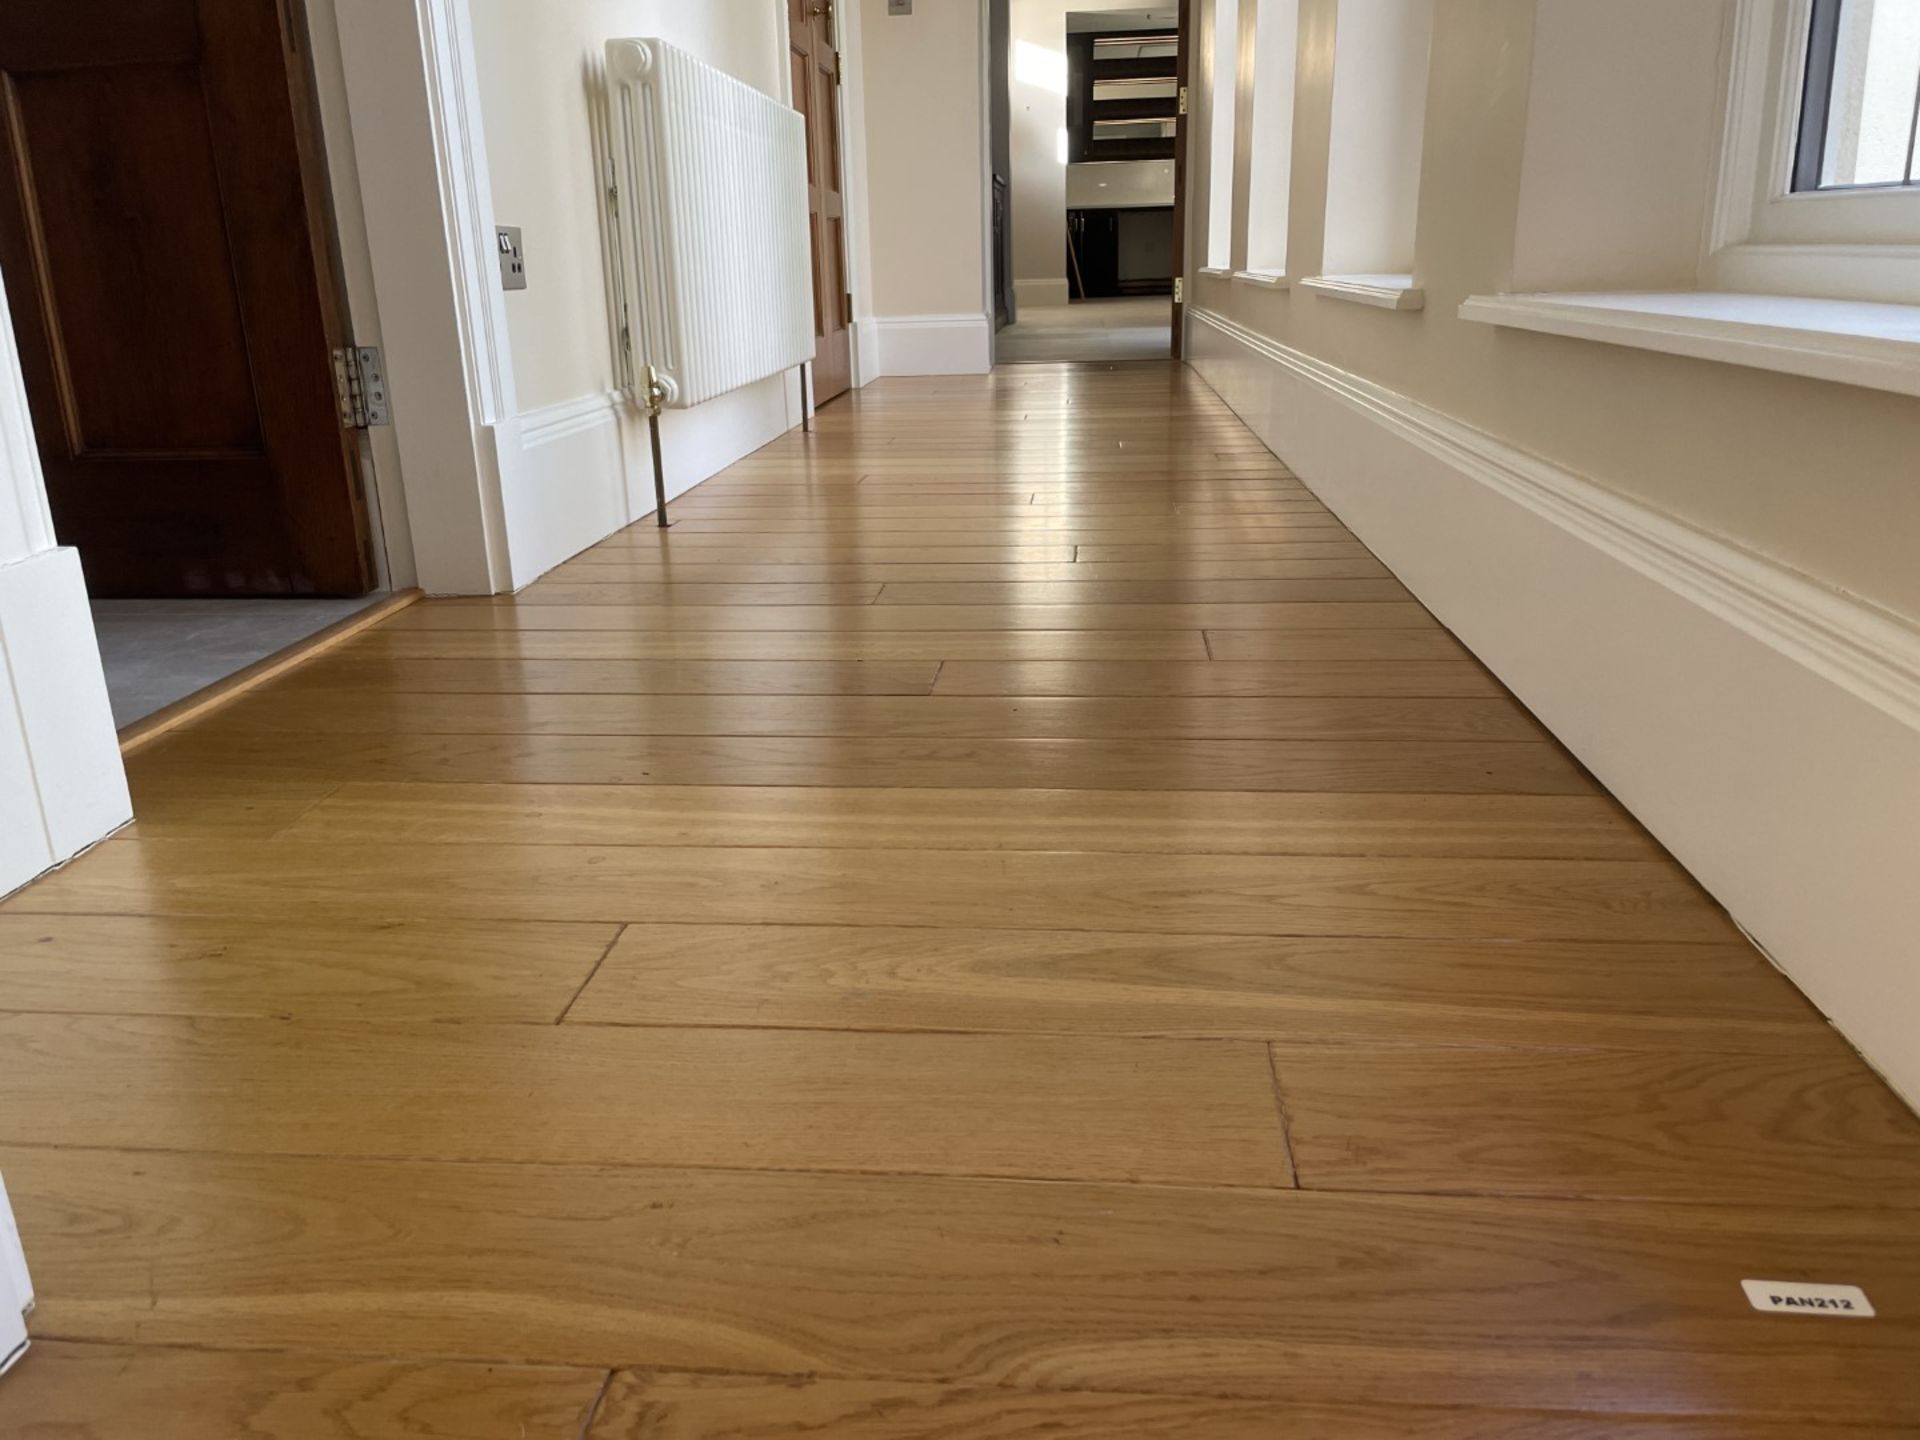 Fine Oak Hardwood Hallway Flooring - 6.3 x 1.2 Metres - Ref: PAN212 - CL896 - NO VAT - Image 11 of 12